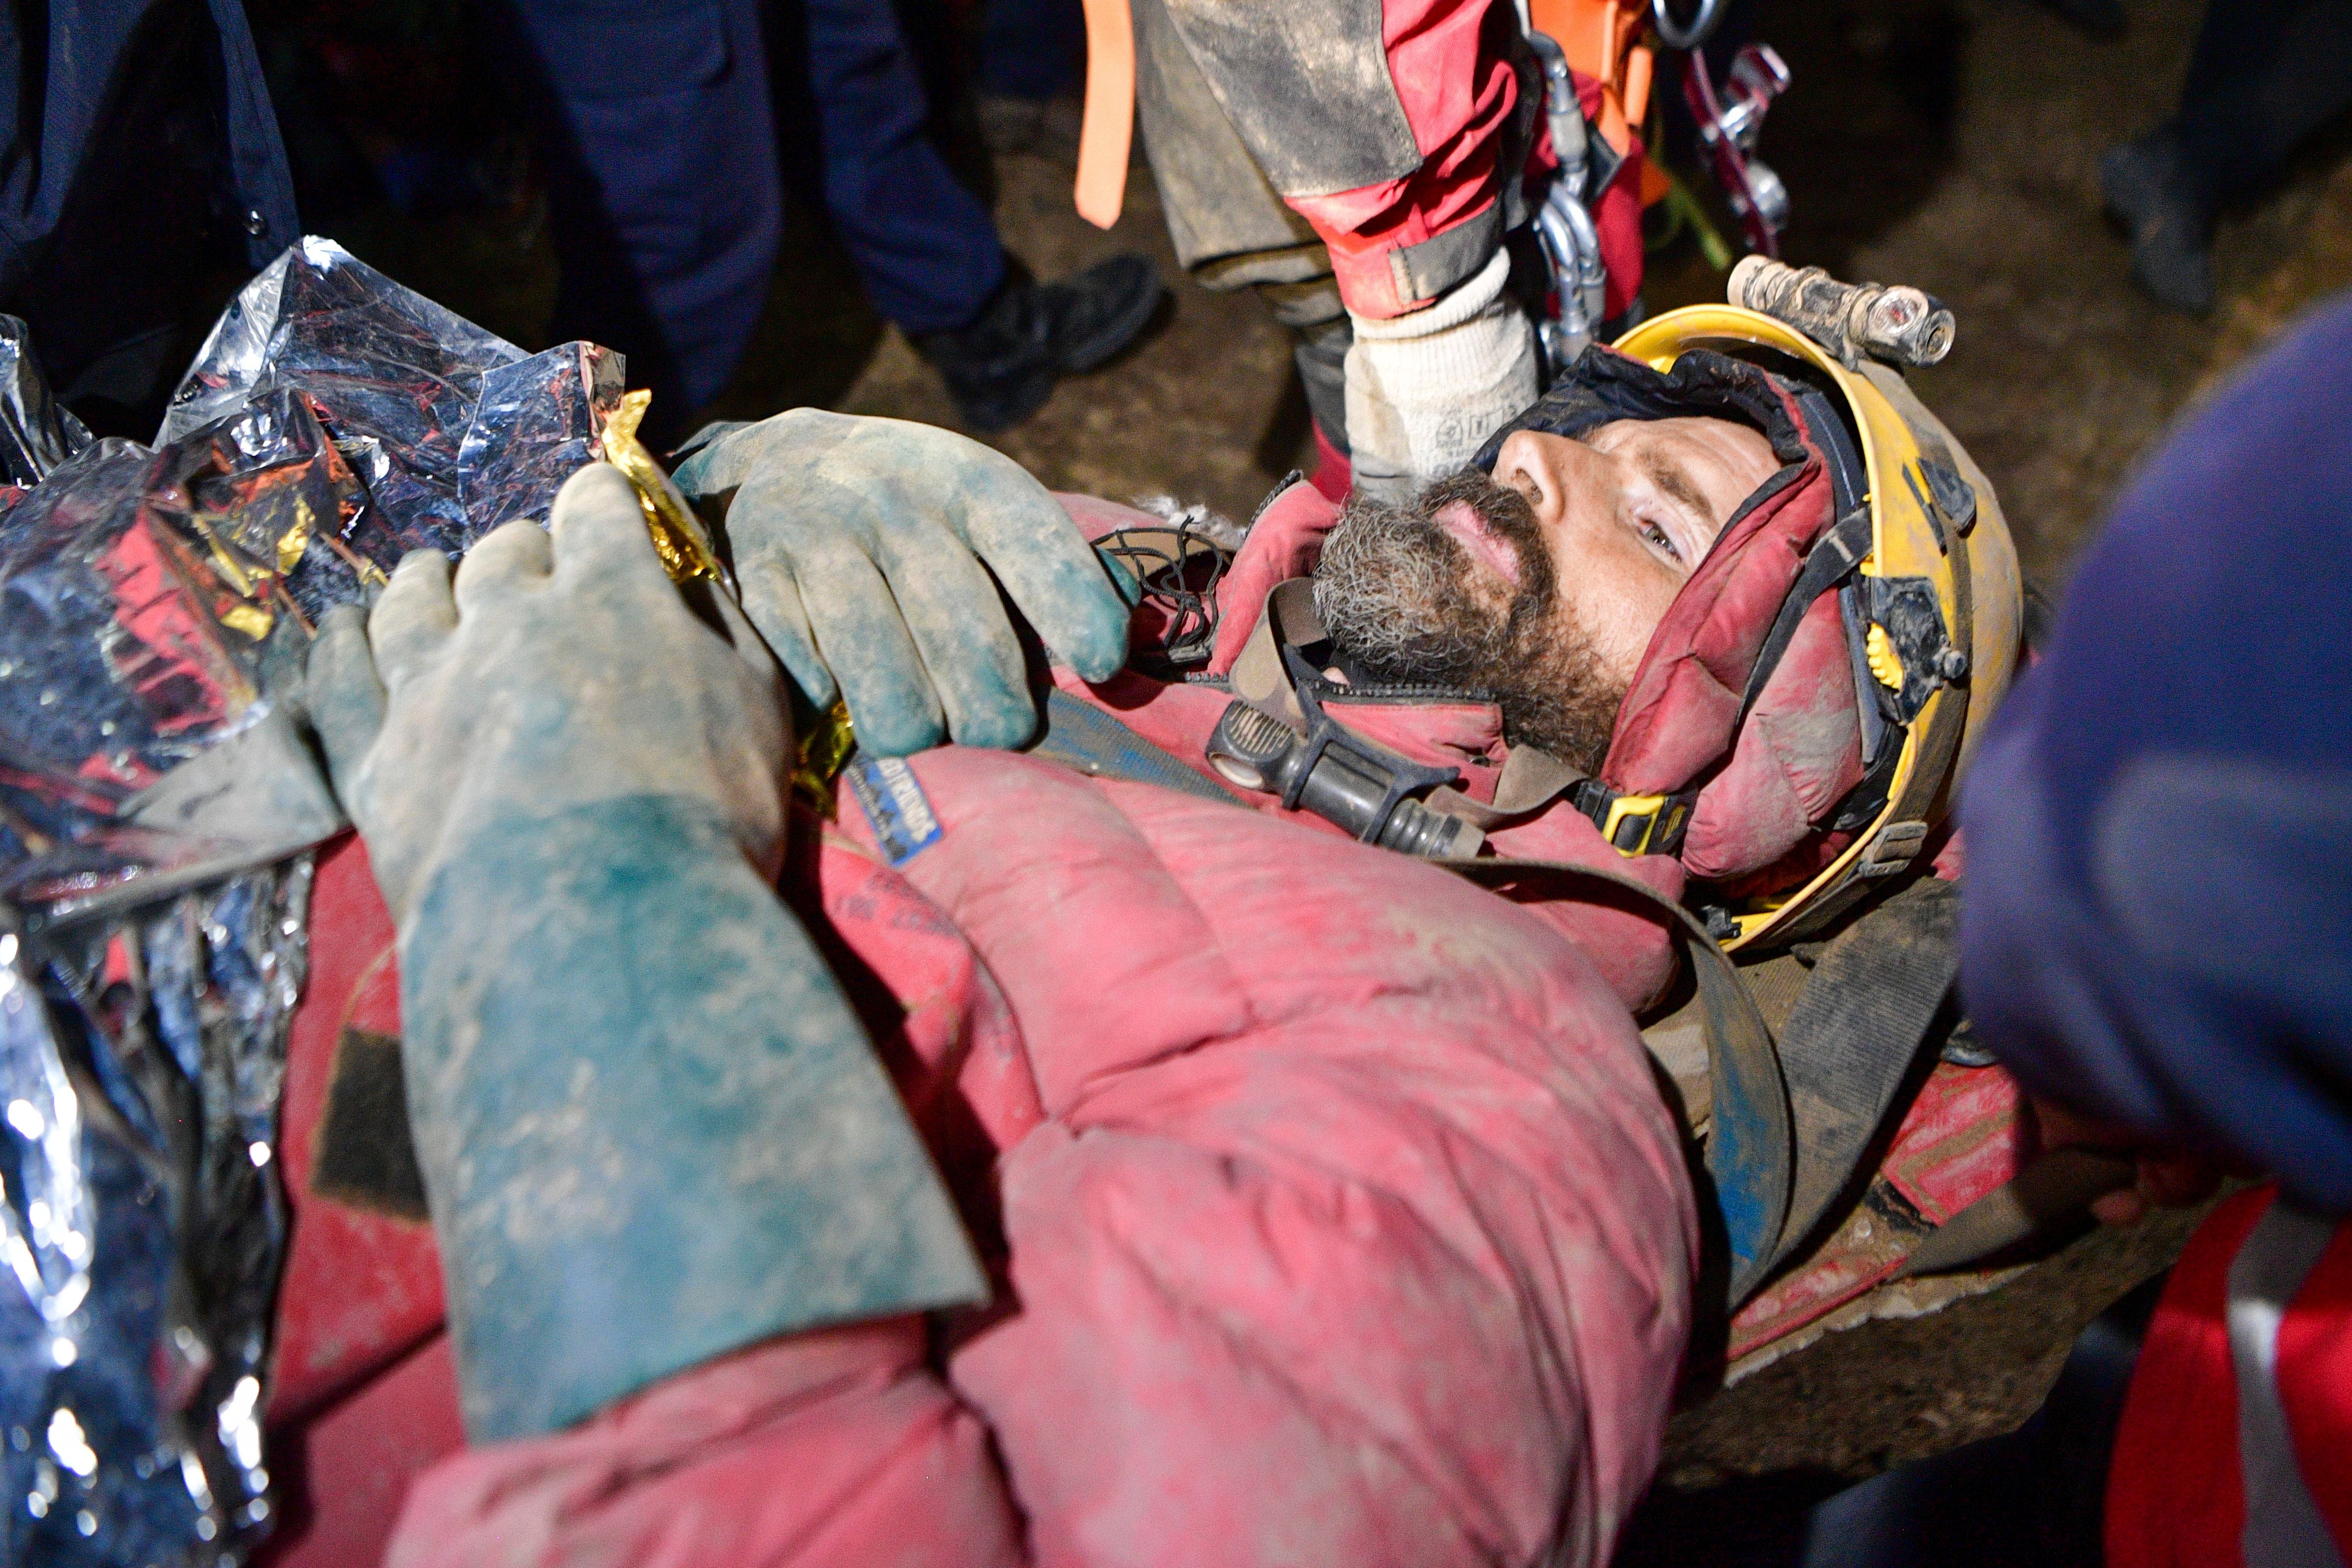 Los equipos de rescate lo transportaron con la ayuda de una camilla (Mert Gokhan Koc/Dia Images via AP)